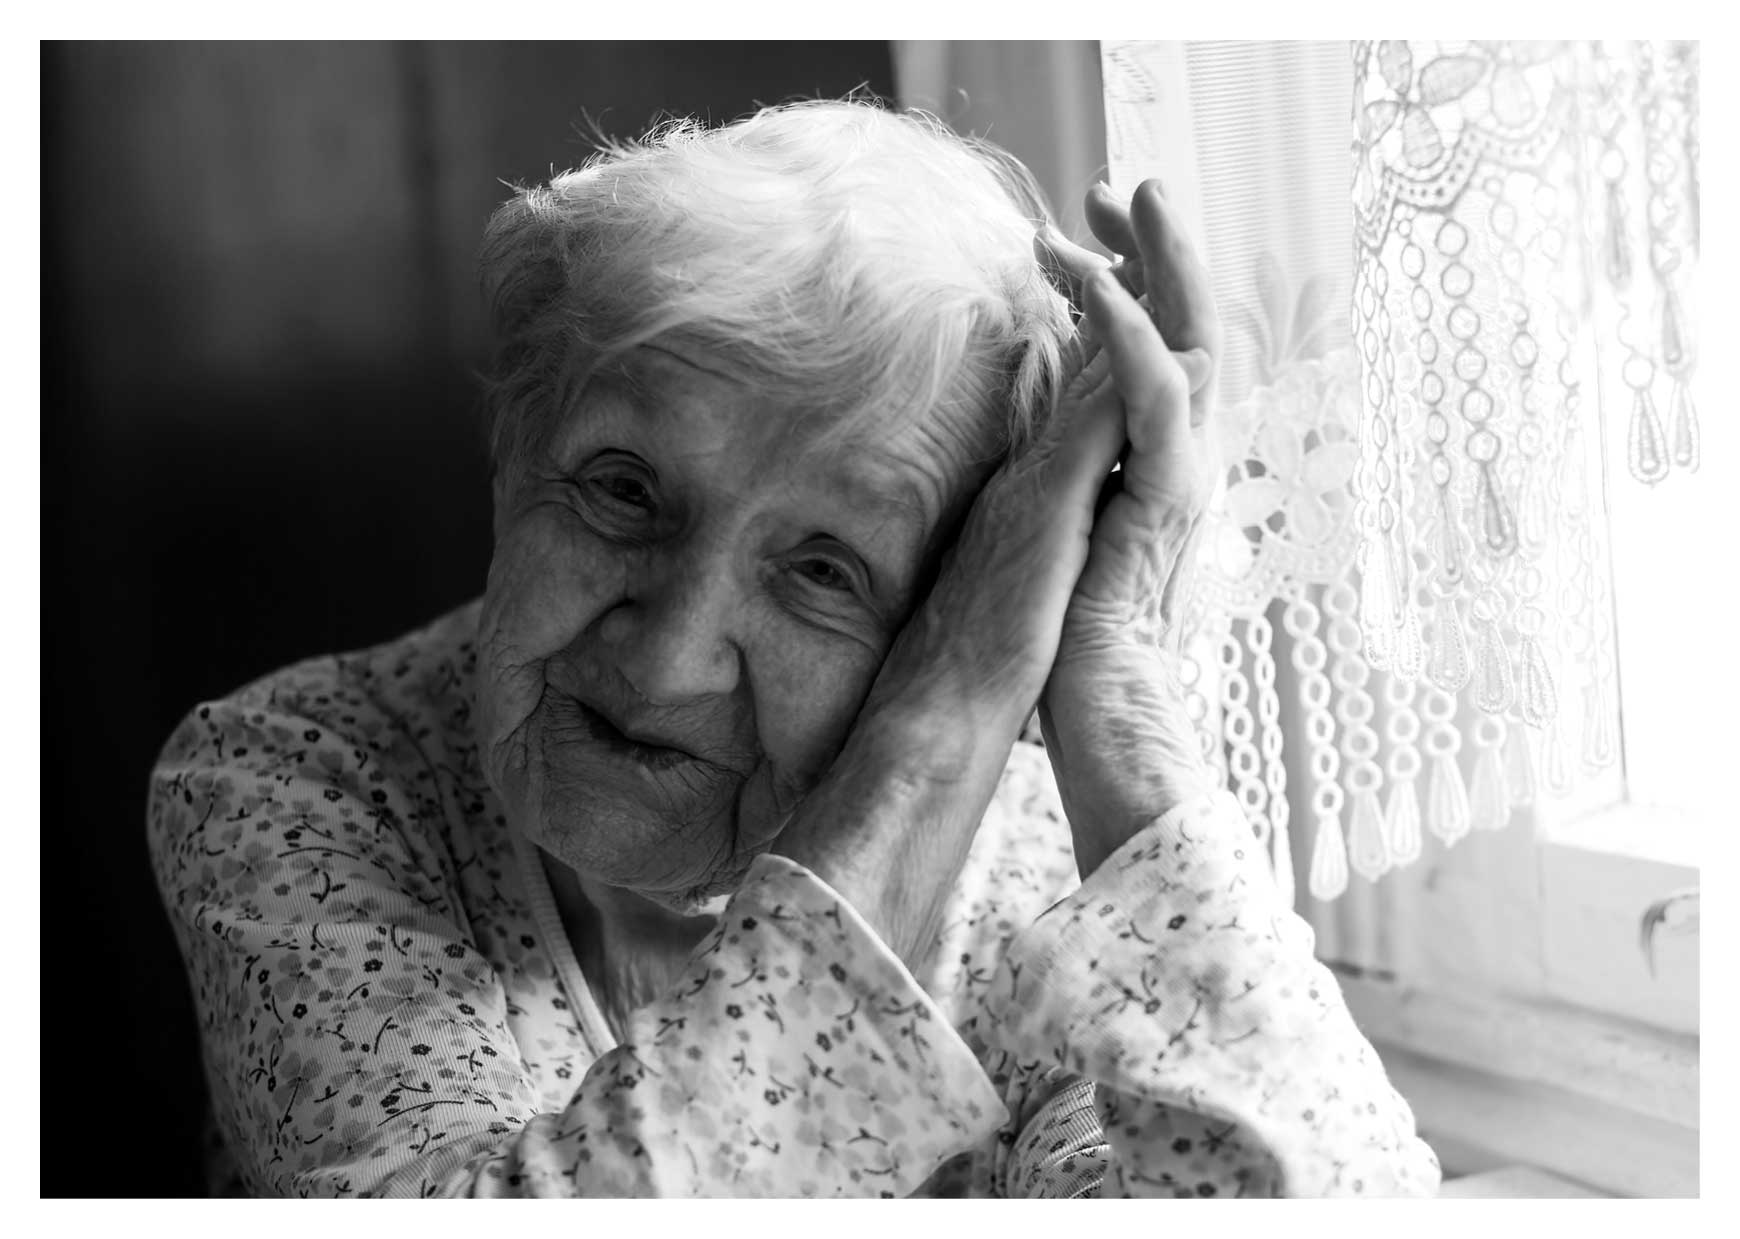 Svartvit porträttbild av en äldre kvinna i hemmamiljö, hon ser ut att sitta vid ett köksbord med gardin i bakgrunden.